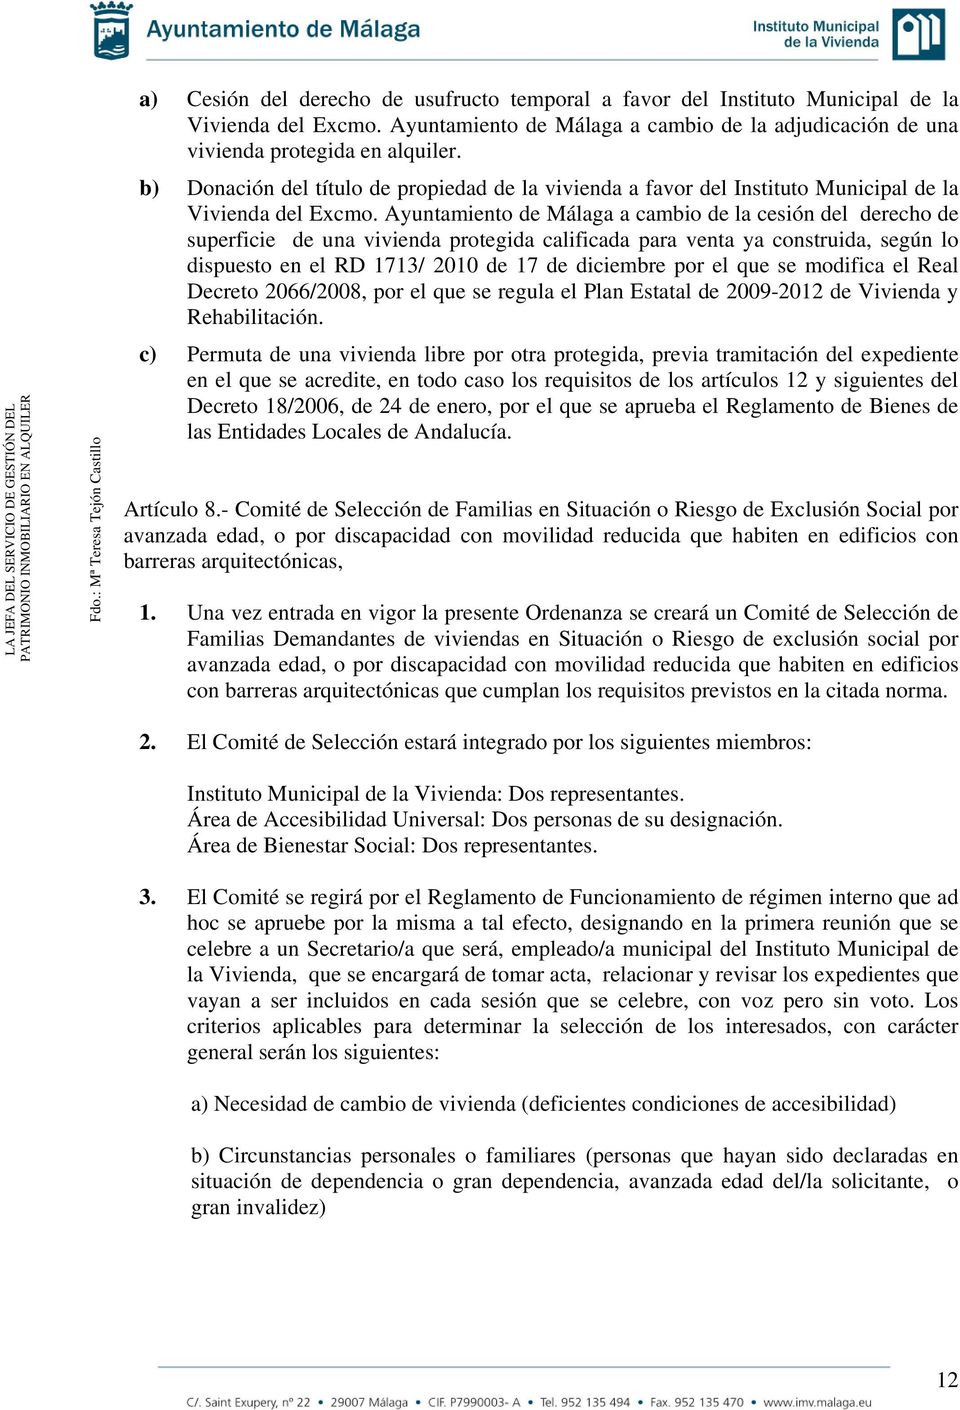 Ayuntamiento de Málaga a cambio de la cesión del derecho de superficie de una vivienda protegida calificada para venta ya construida, según lo dispuesto en el RD 1713/ 2010 de 17 de diciembre por el